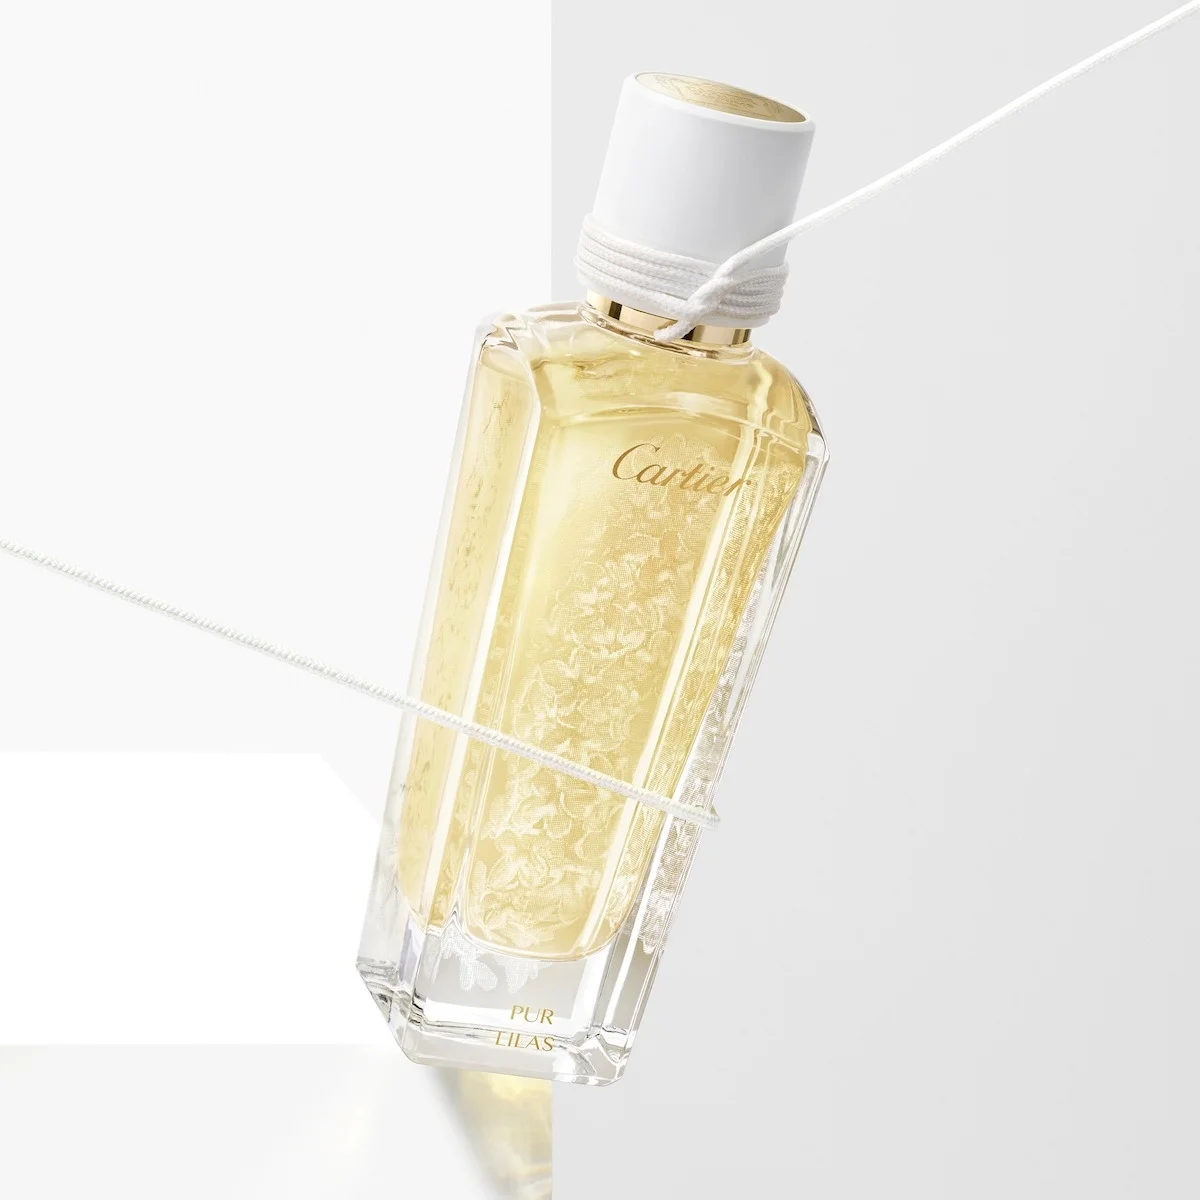 【カルティエ】最新フレグランス「ピュール リラ」。ホワイトライラックをイメージした晴れやかな香り